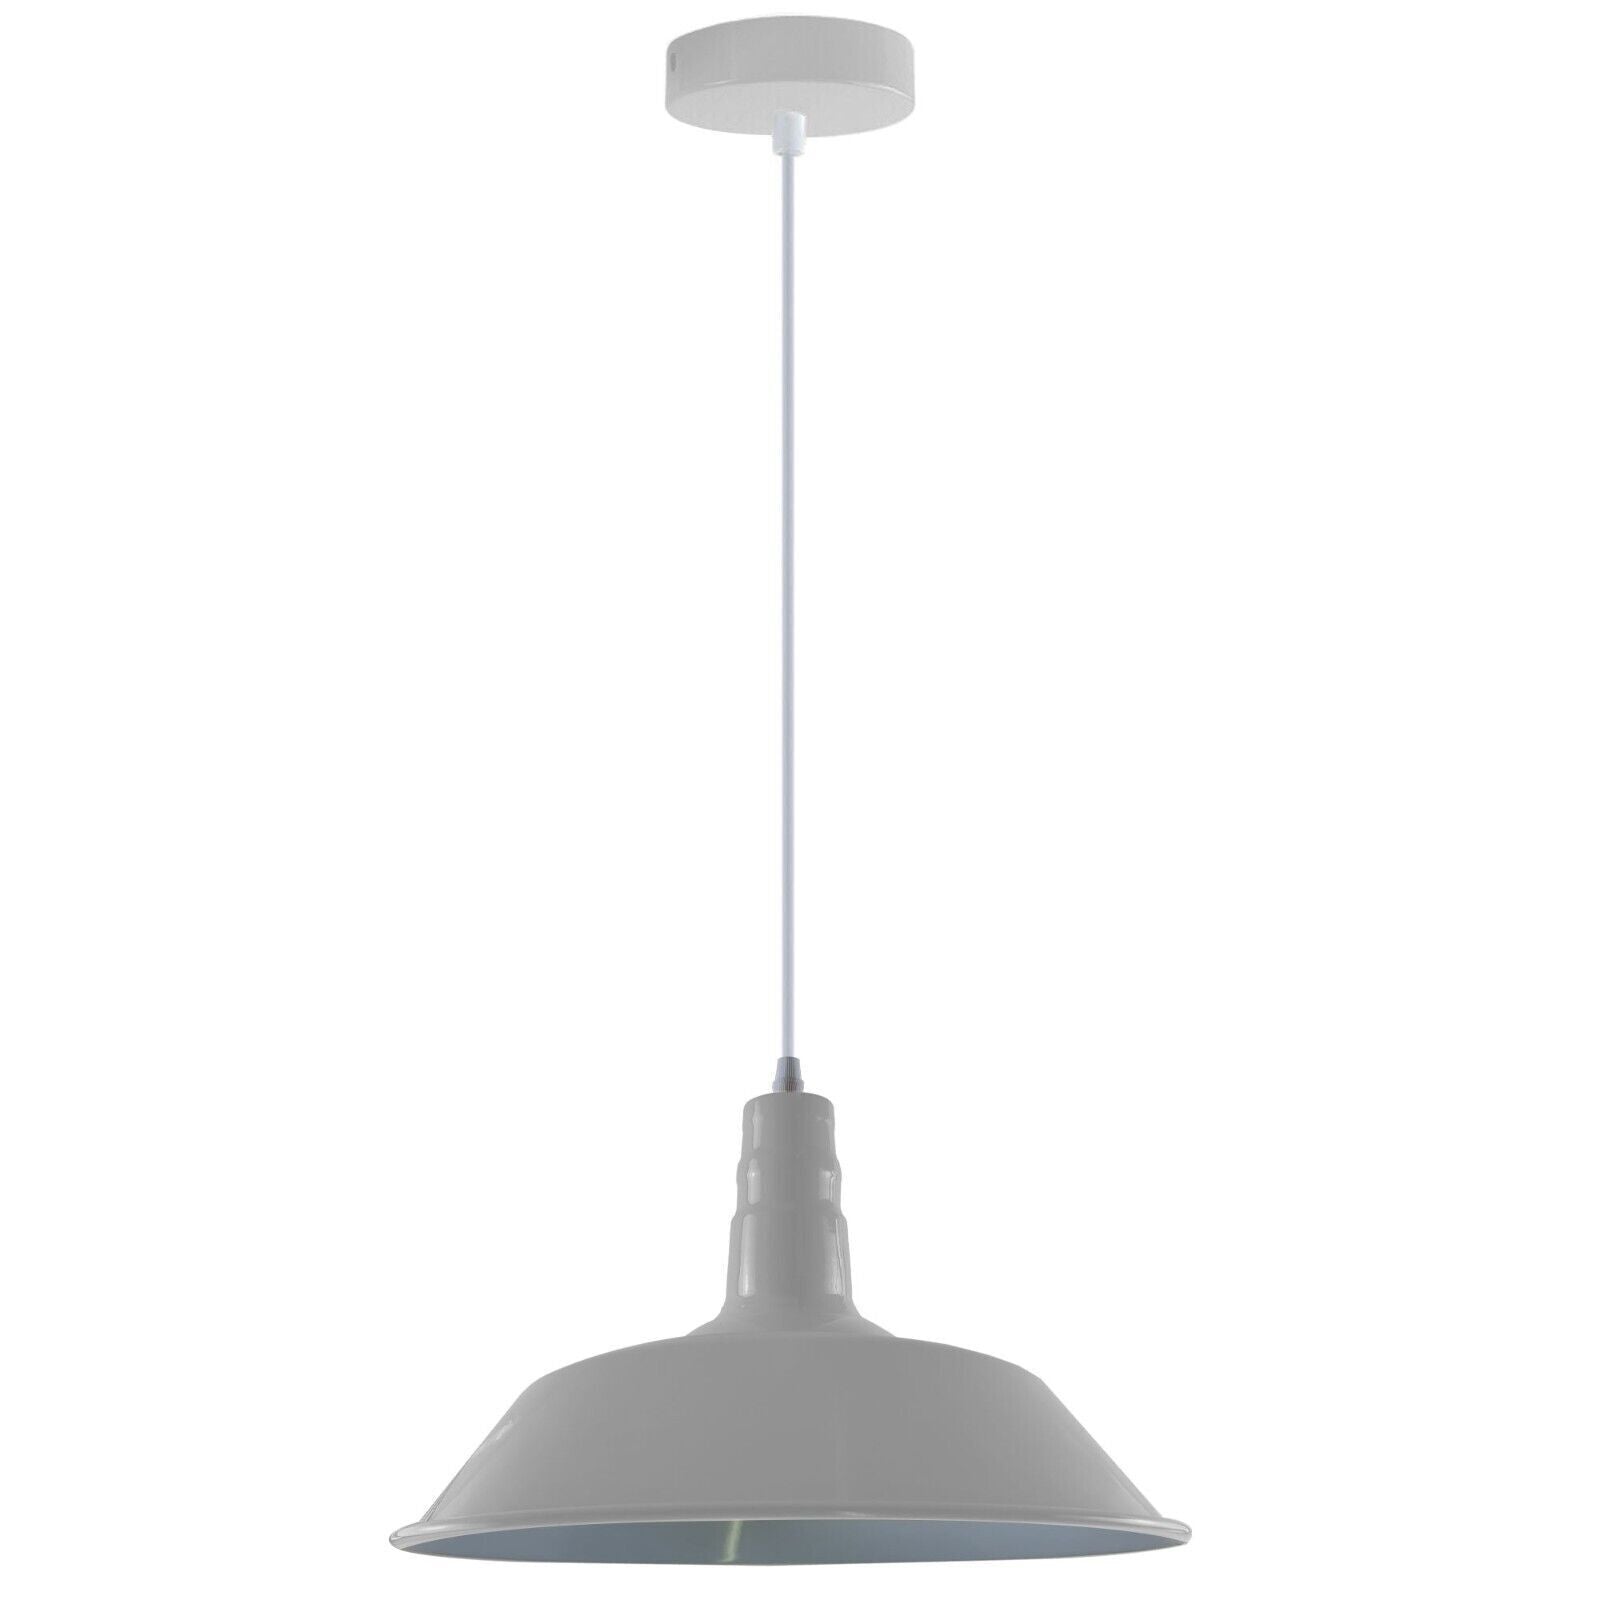 Hanging pendant Ceiling Lamp, Metal Light Shade Lighting UK E27 Edison base Decorate Height Adjustable Pendant Light for Bar, Restaurant ,